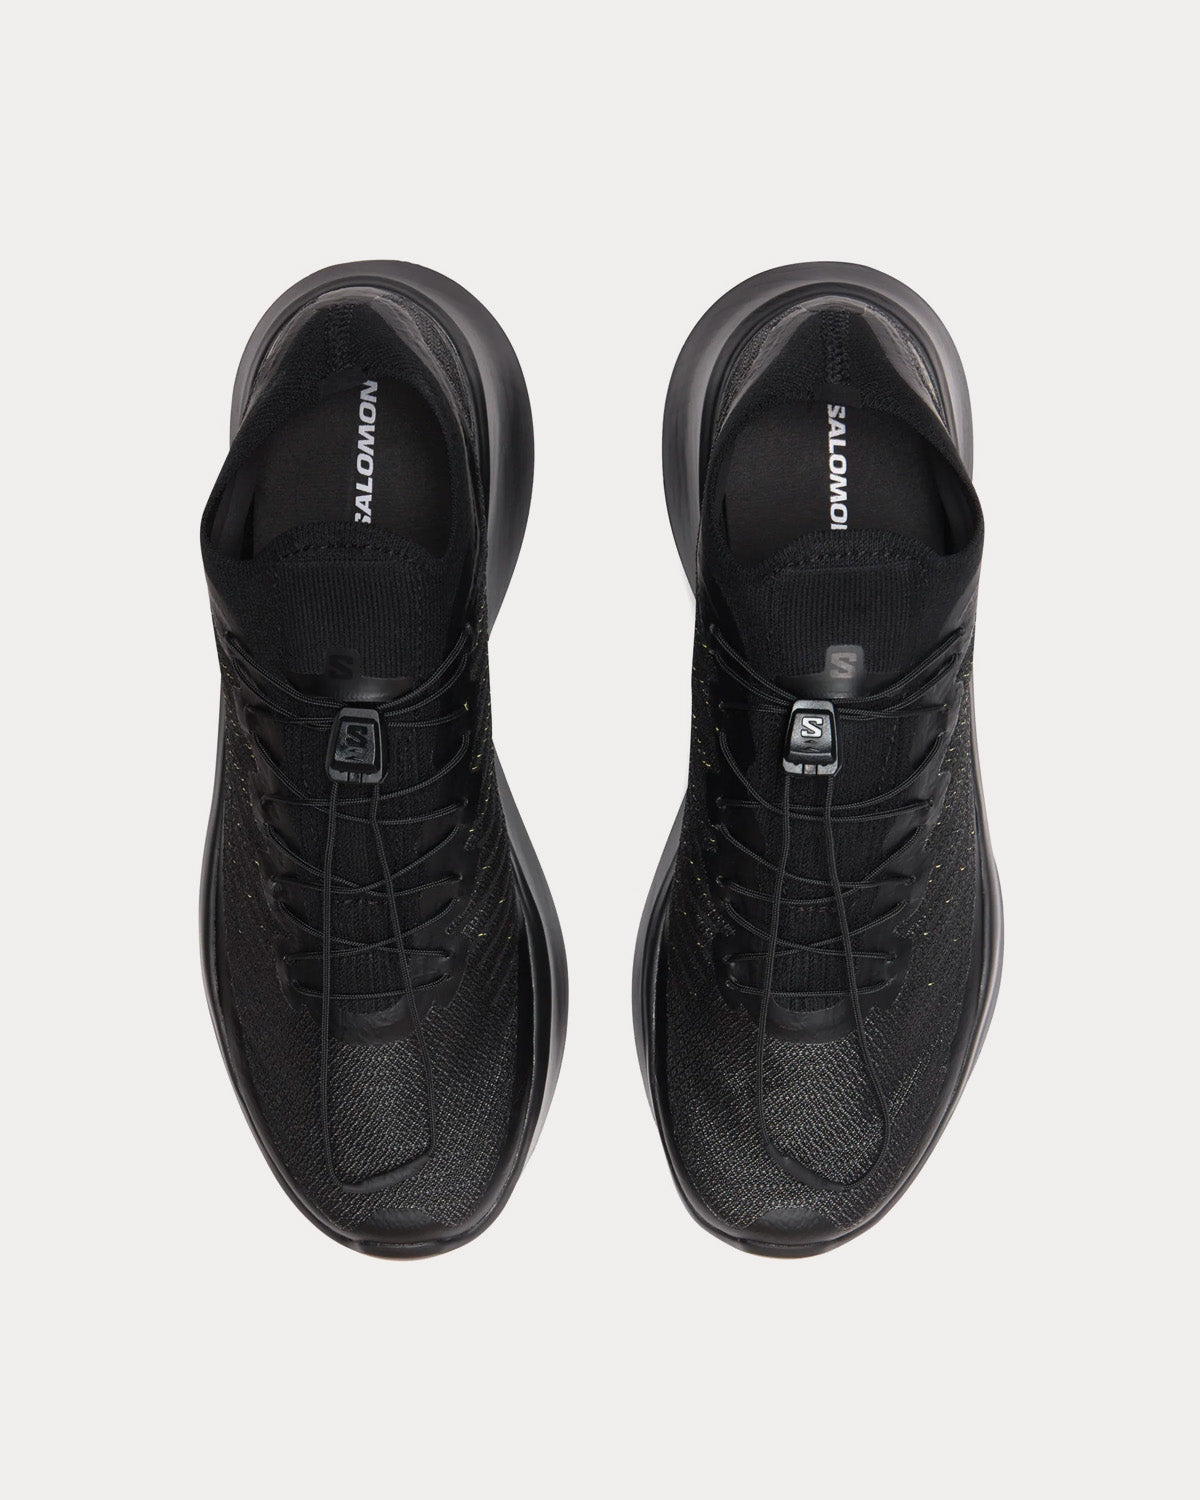 Salomon x Comme des Garçons - Pulsar Platform Black Low Top Sneakers